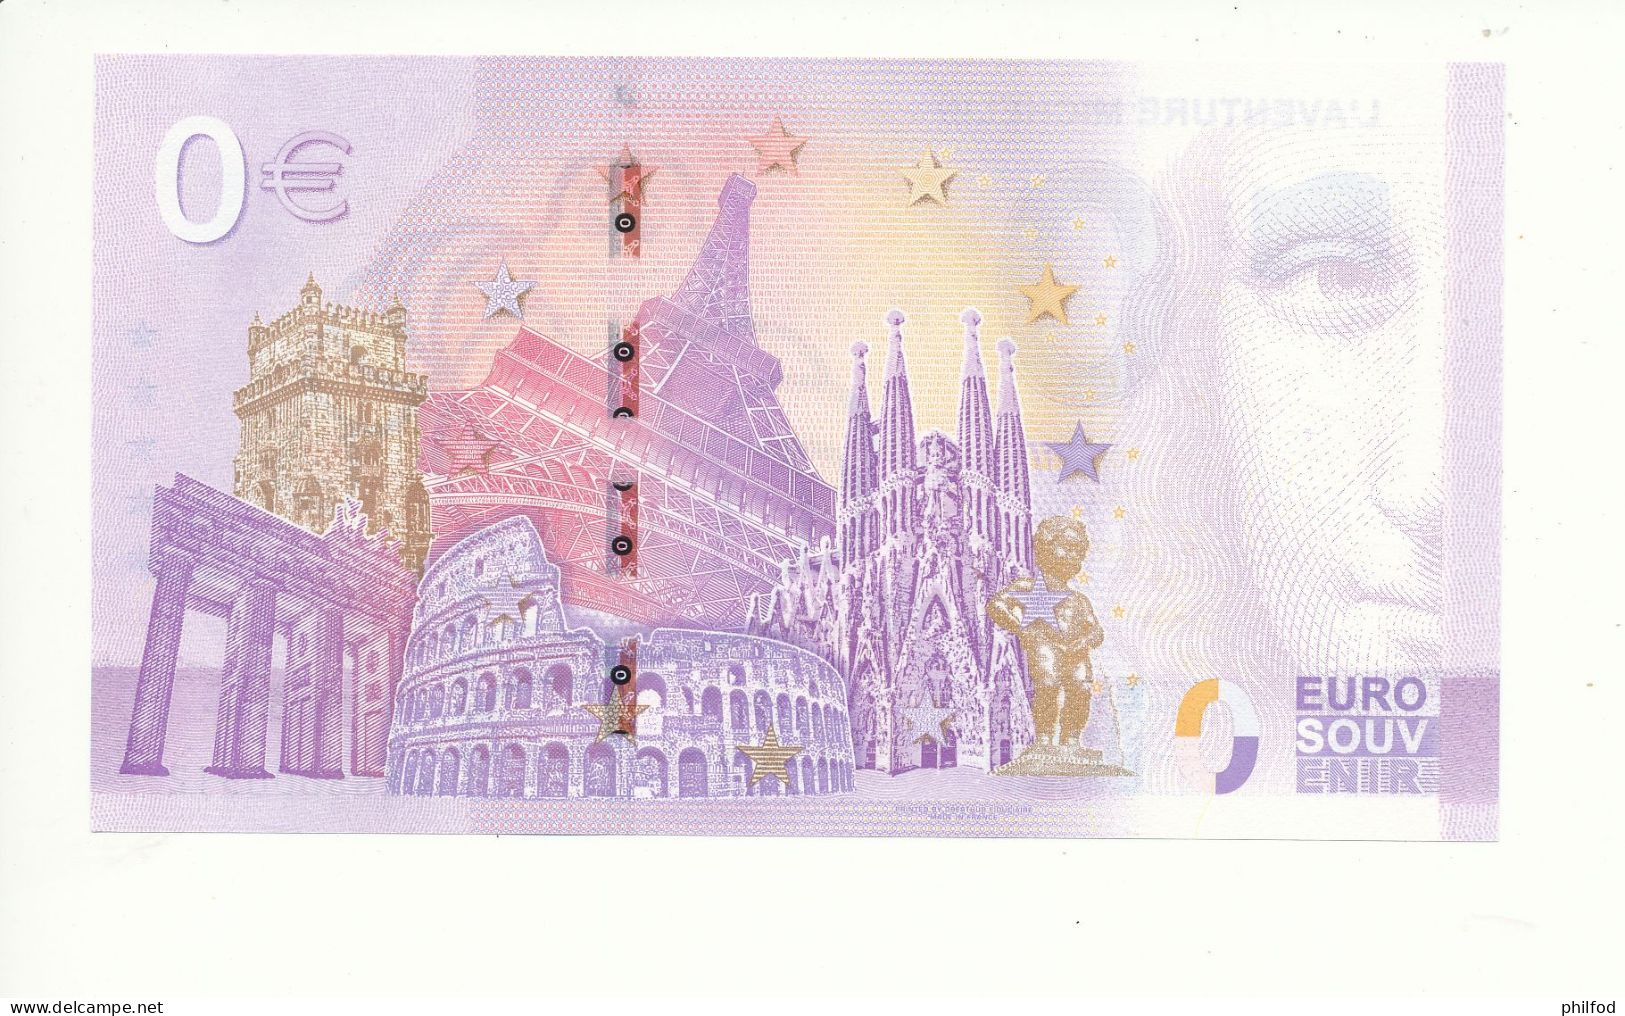 Billet Souvenir - 0 Euro - L'AVENTURE MICHELIN - UEGS - 2023-6 - N° 512 - Mezclas - Billetes